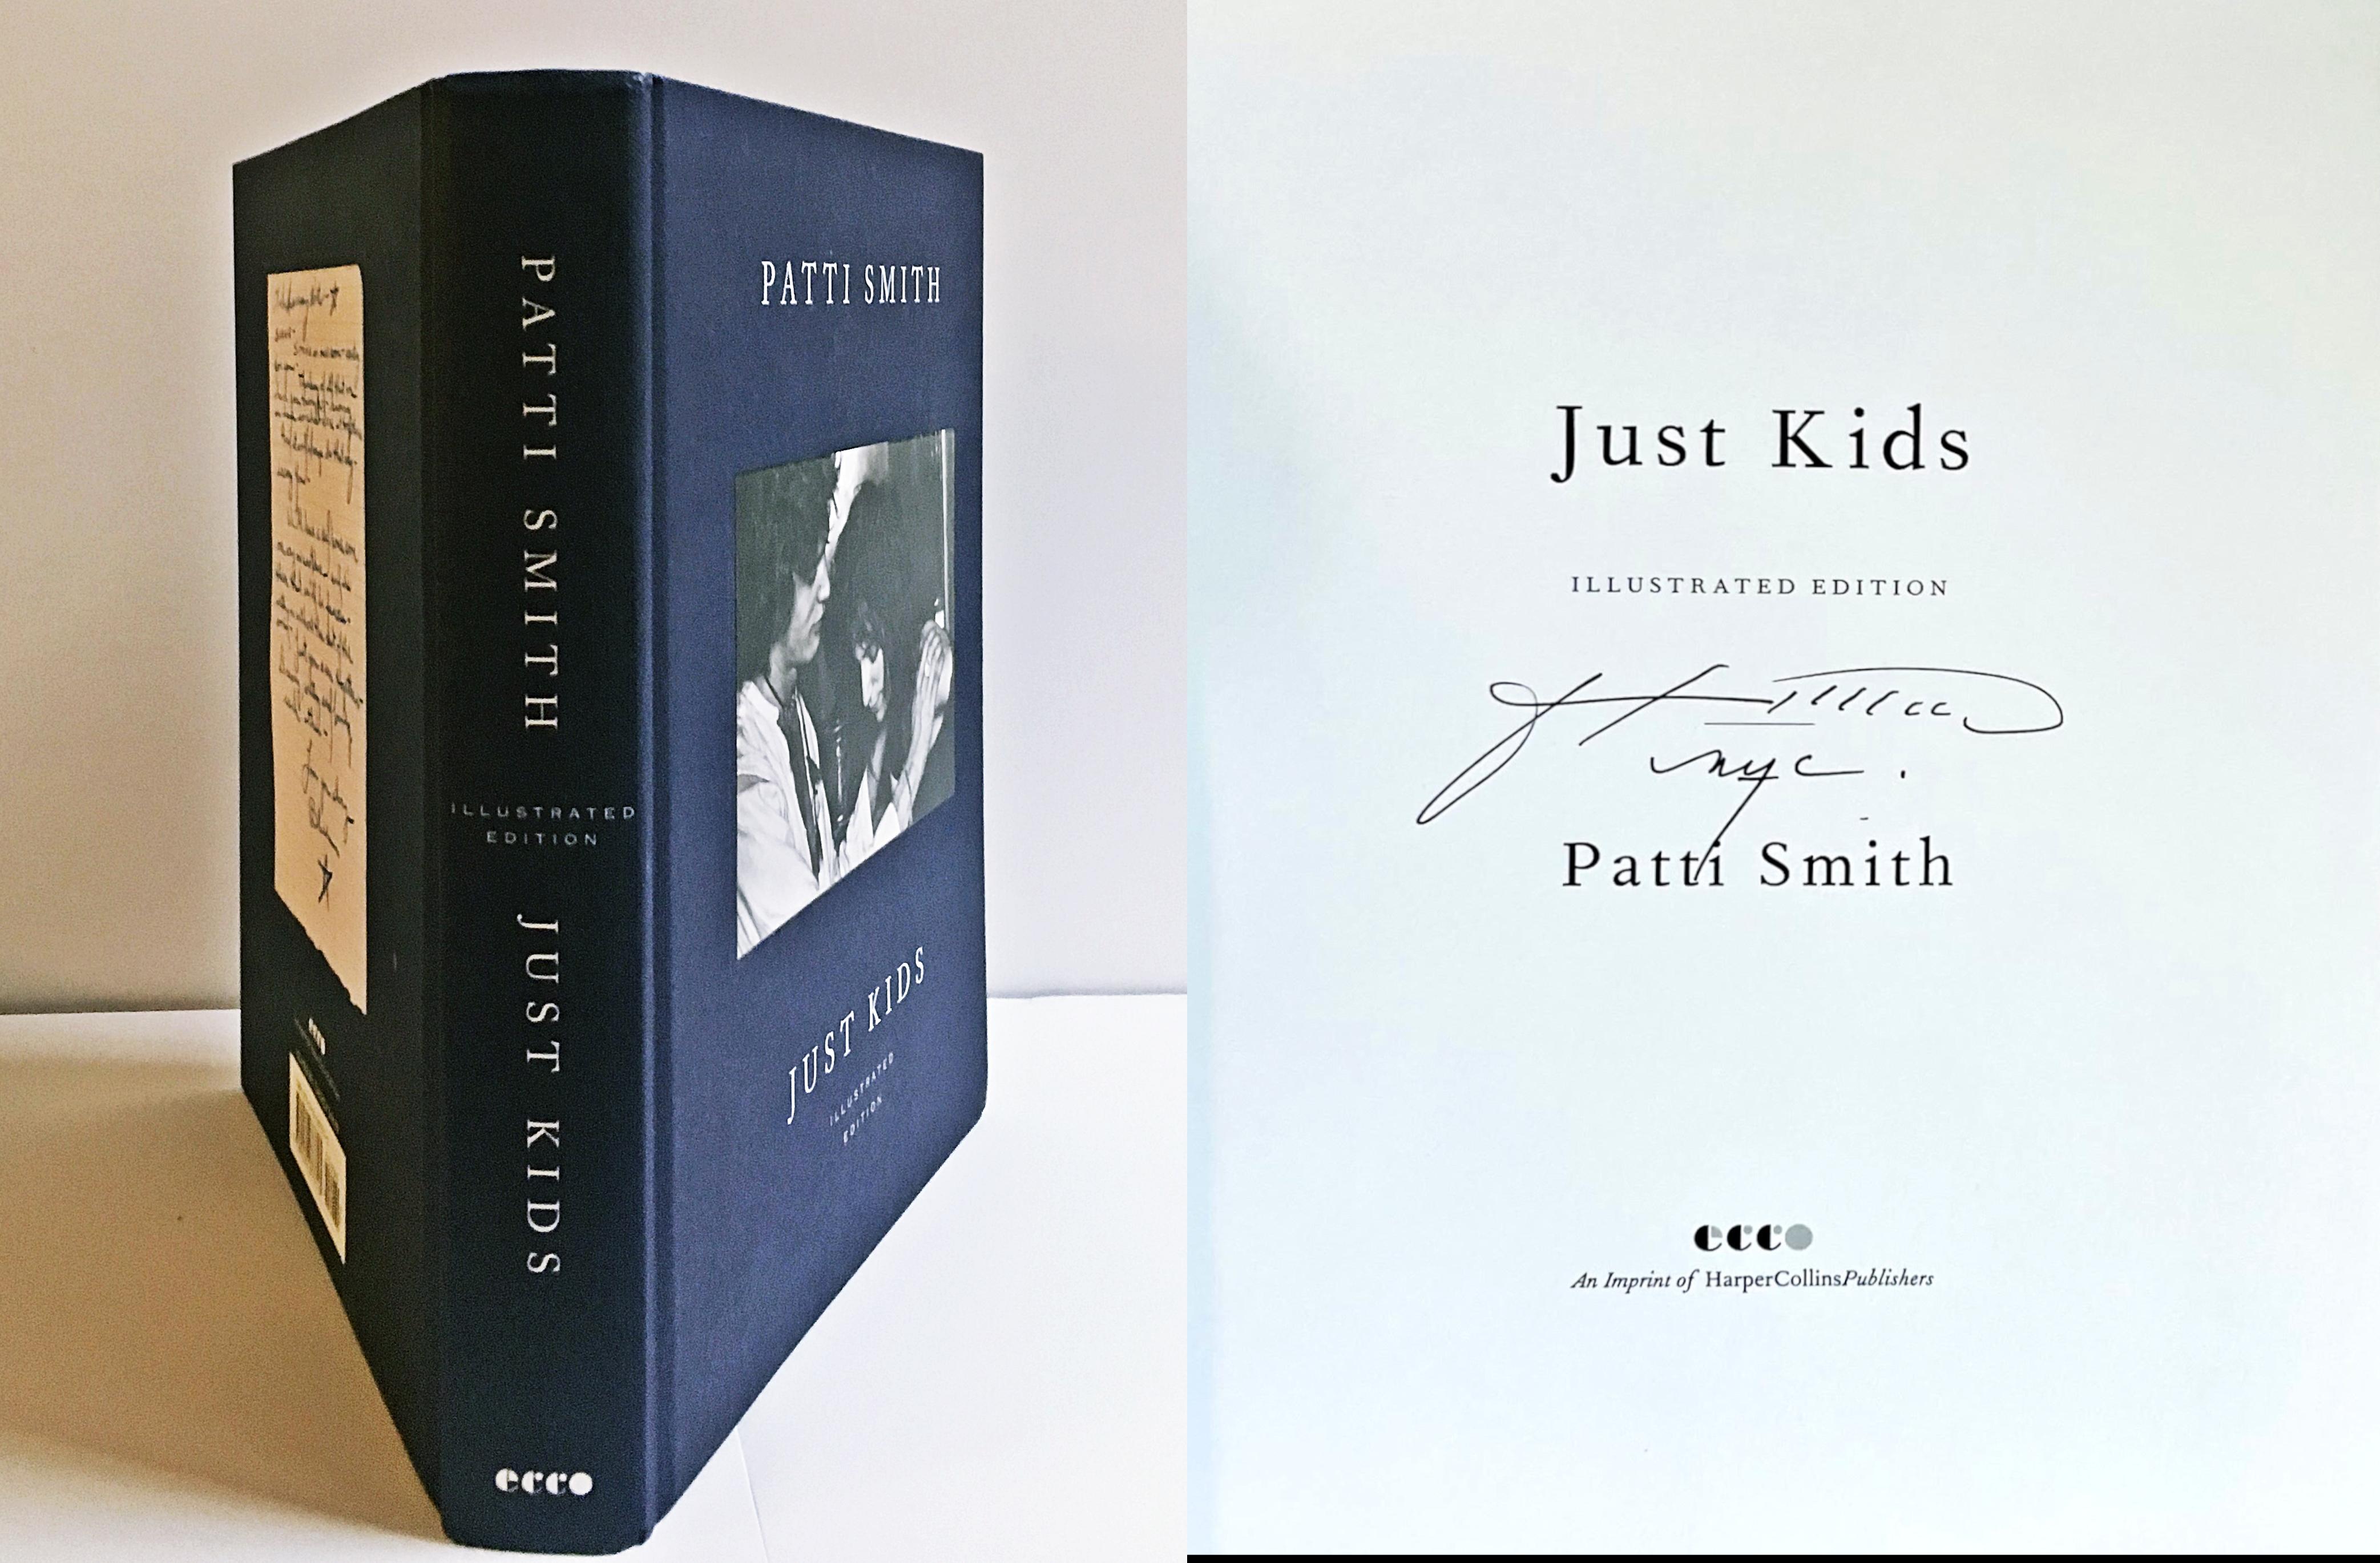 Patti Smith
Just Kids Illustrated Edition (signée et datée à la main par Patti Smith), 2018
Monographie reliée (signée et inscrite à la main par Patti Smith)
Signé et daté à la main par Patti Smith
9 4/5 × 7 1/10 × 1 1/4 pouces
Provenance
Signé à la